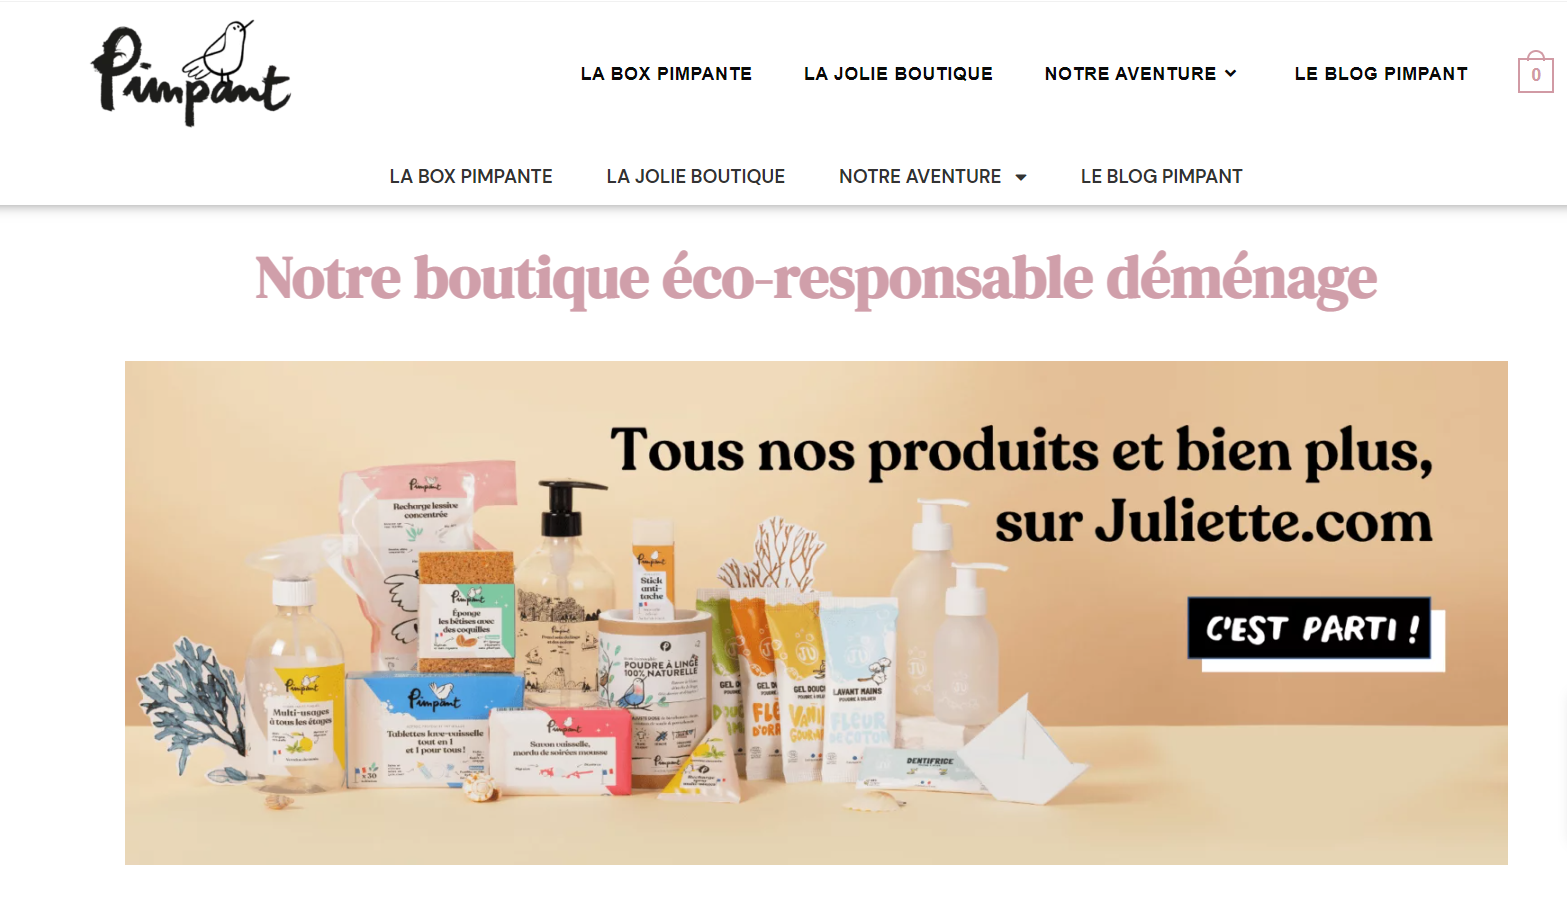 法国环保个护品牌 Juliette  收购天然家居清洁用品初创公司 Pimpant 